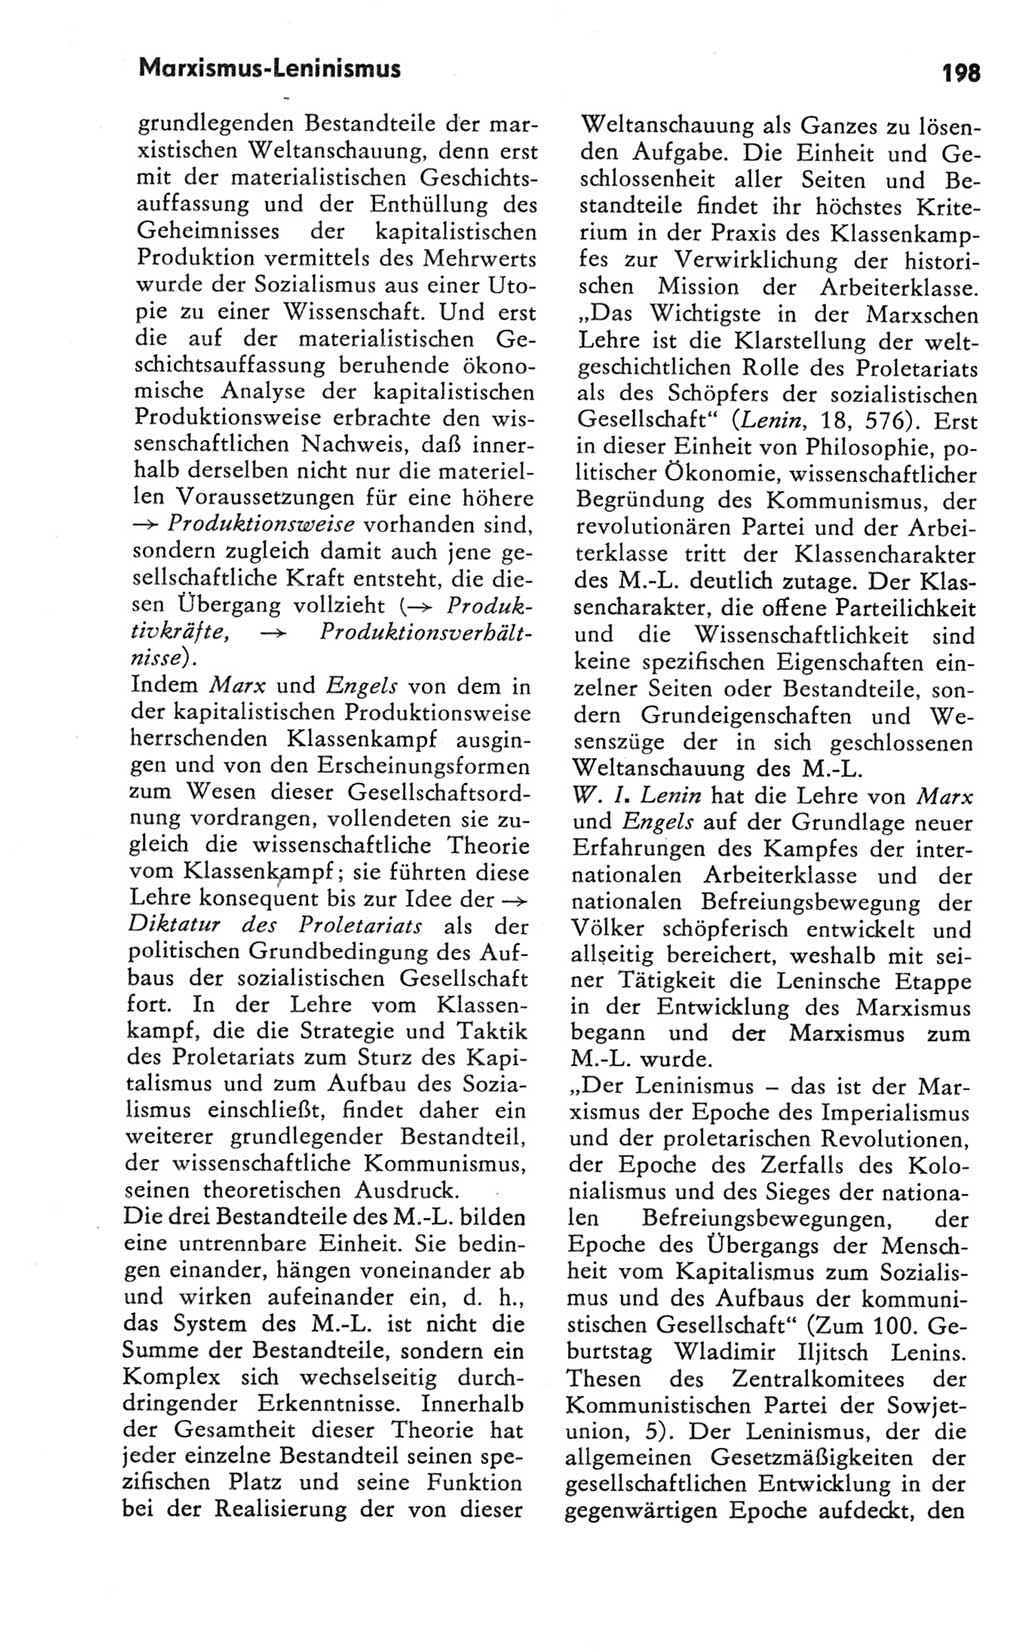 Kleines Wörterbuch der marxistisch-leninistischen Philosophie [Deutsche Demokratische Republik (DDR)] 1981, Seite 198 (Kl. Wb. ML Phil. DDR 1981, S. 198)